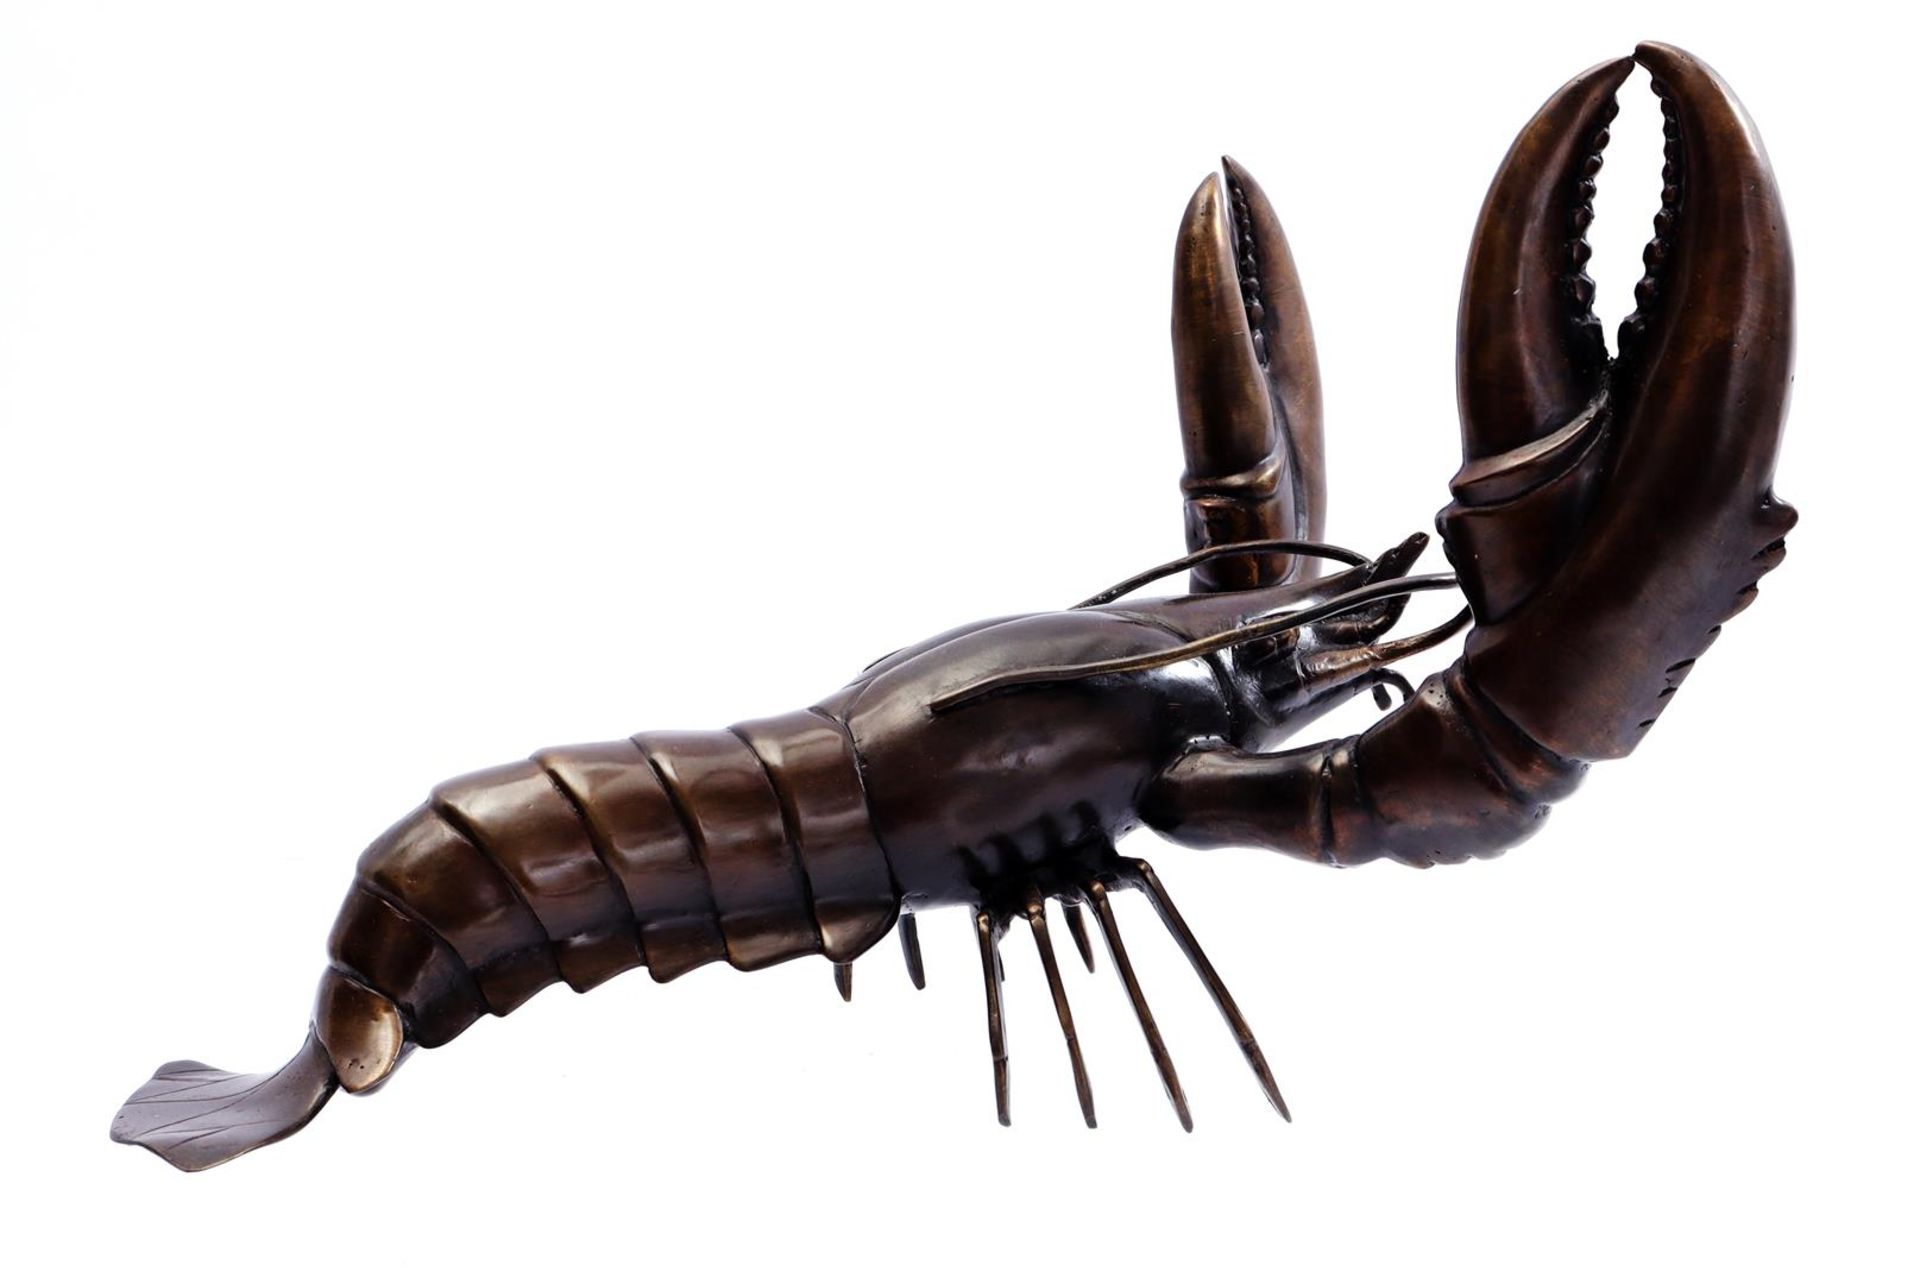 Bronze sculpture of a lobster